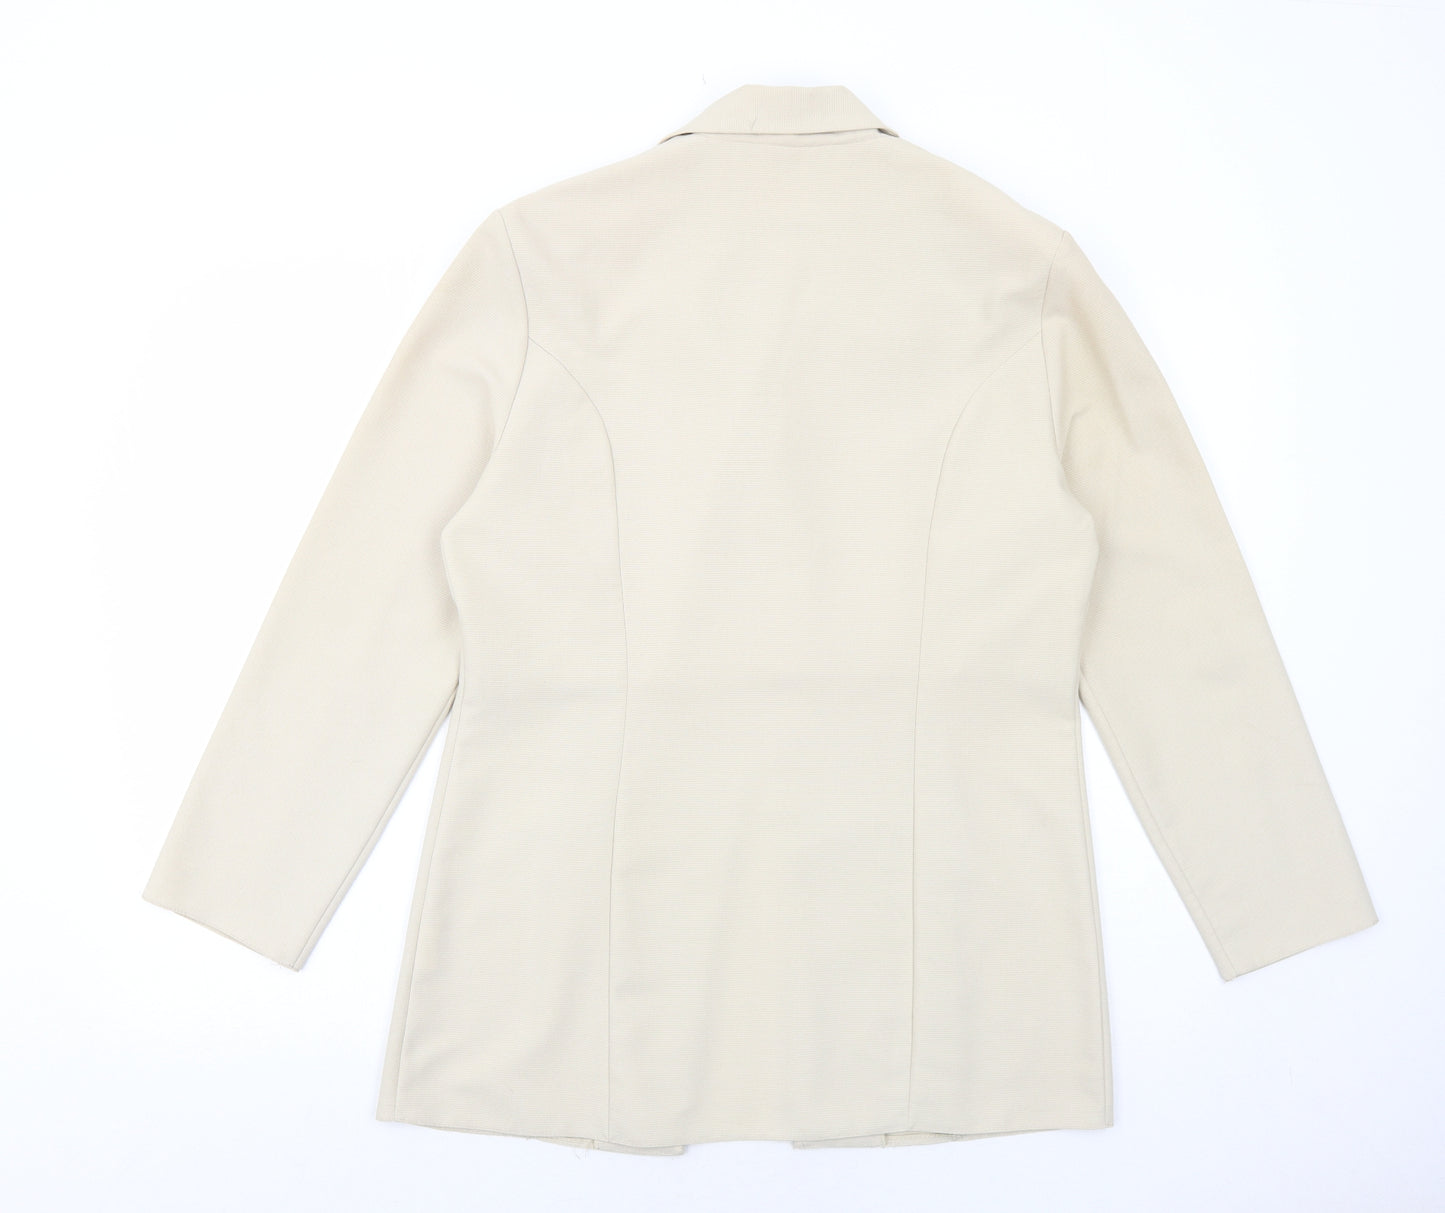 Paragon Womens Beige Jacket Blazer Size 12 Button